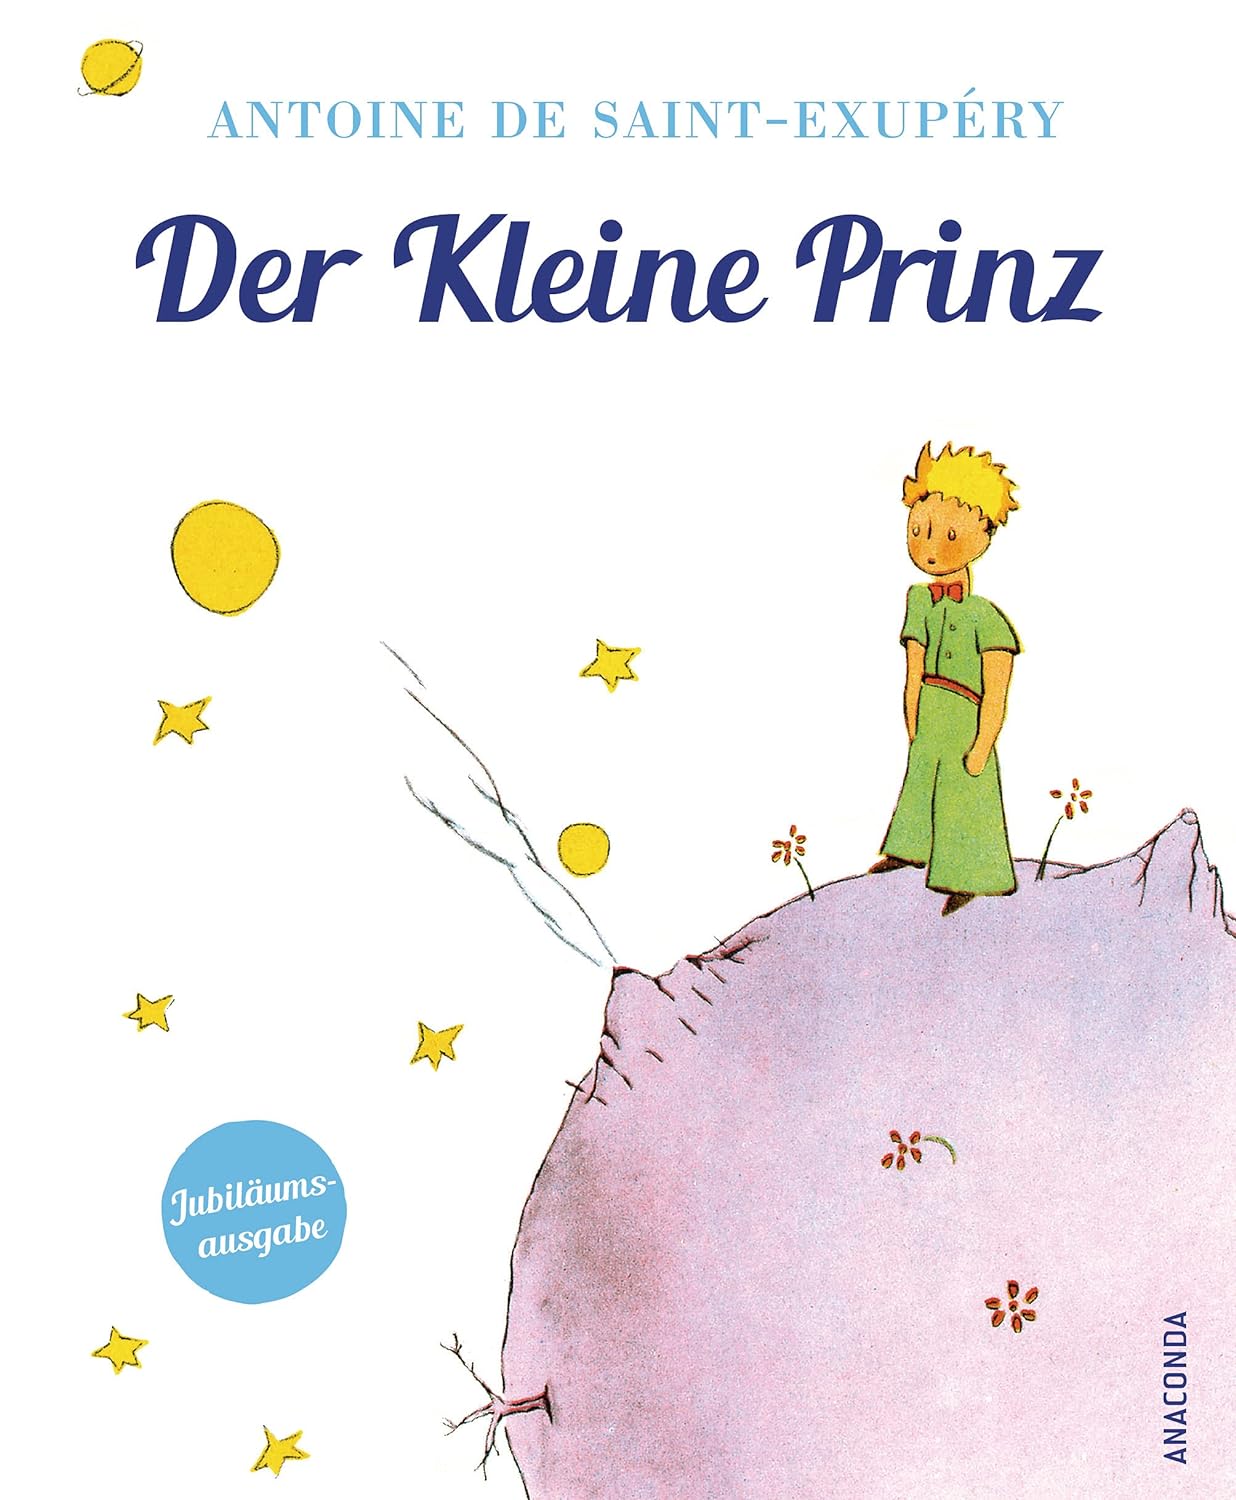 Buchcover von 'Der kleine Prinz' von Antoine de Saint-Exupéry, ein tiefgründiges Kinderbuch zum Vorlesen, zeigt den kleinen Prinzen auf einem Asteroiden, umgeben von Sternen und farbenfrohen Illustrationen.